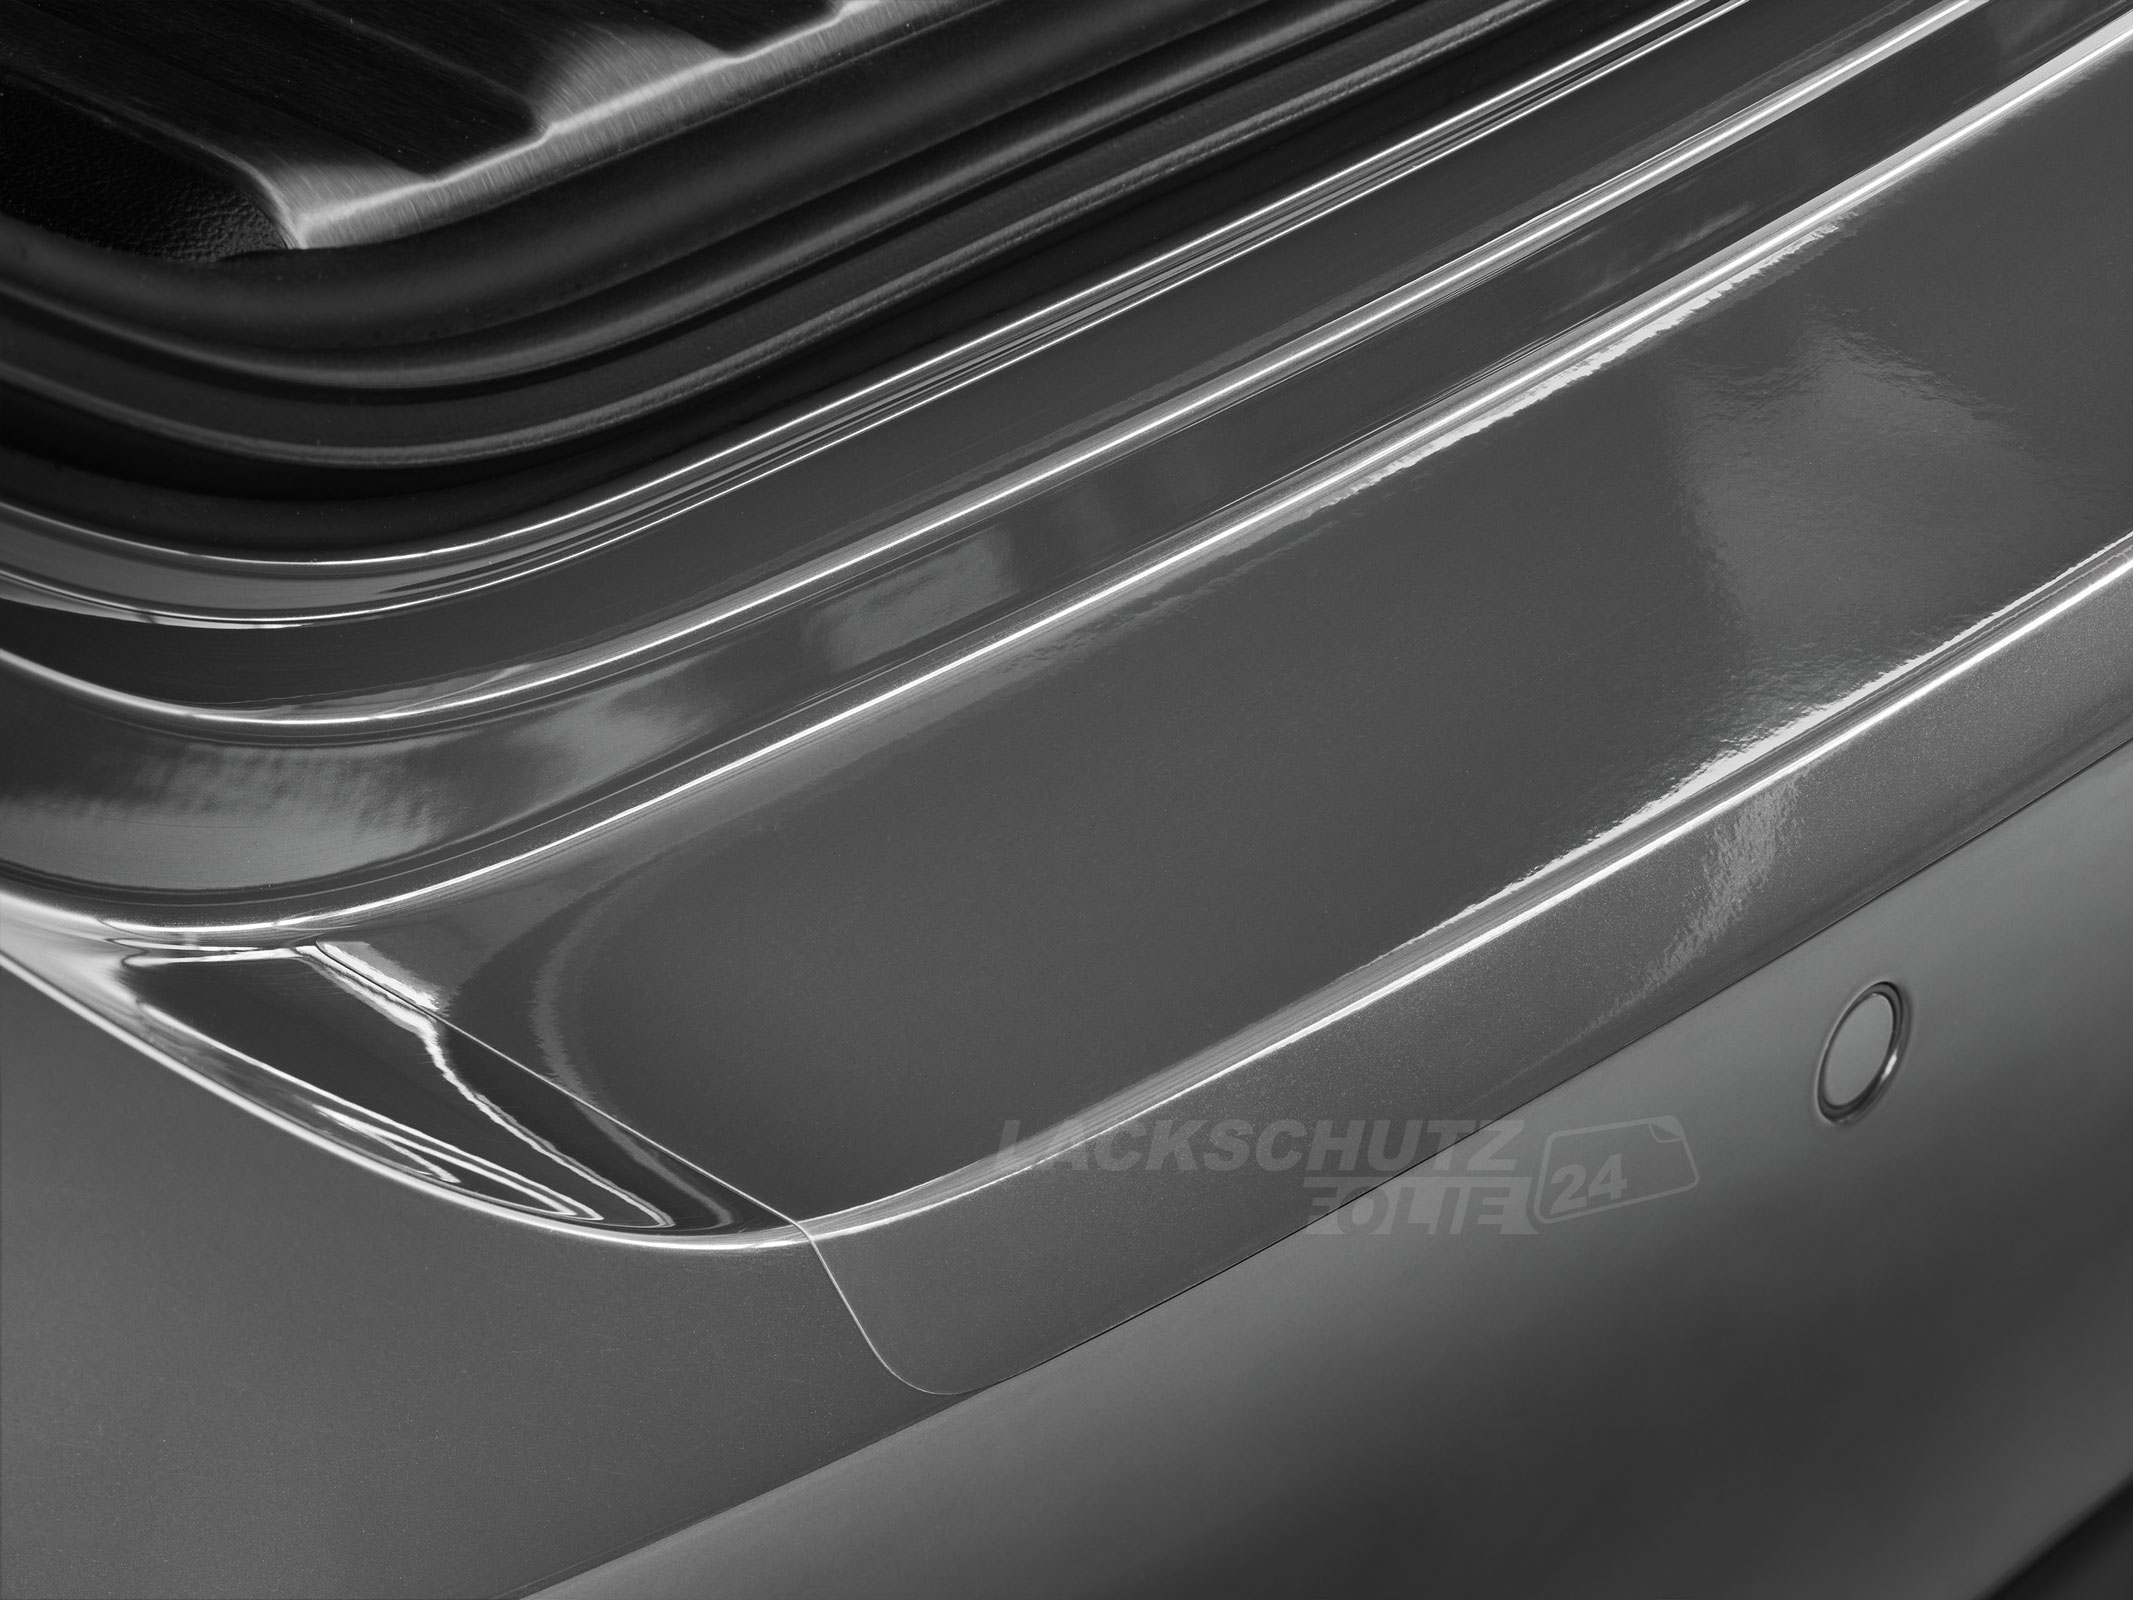 Ladekantenschutzfolie - Transparent Glatt Hochglänzend 150 µm stark für VW / Volkswagen Golf Variant (Kombi) 5, Typ 1K, BJ 06/2007-2009